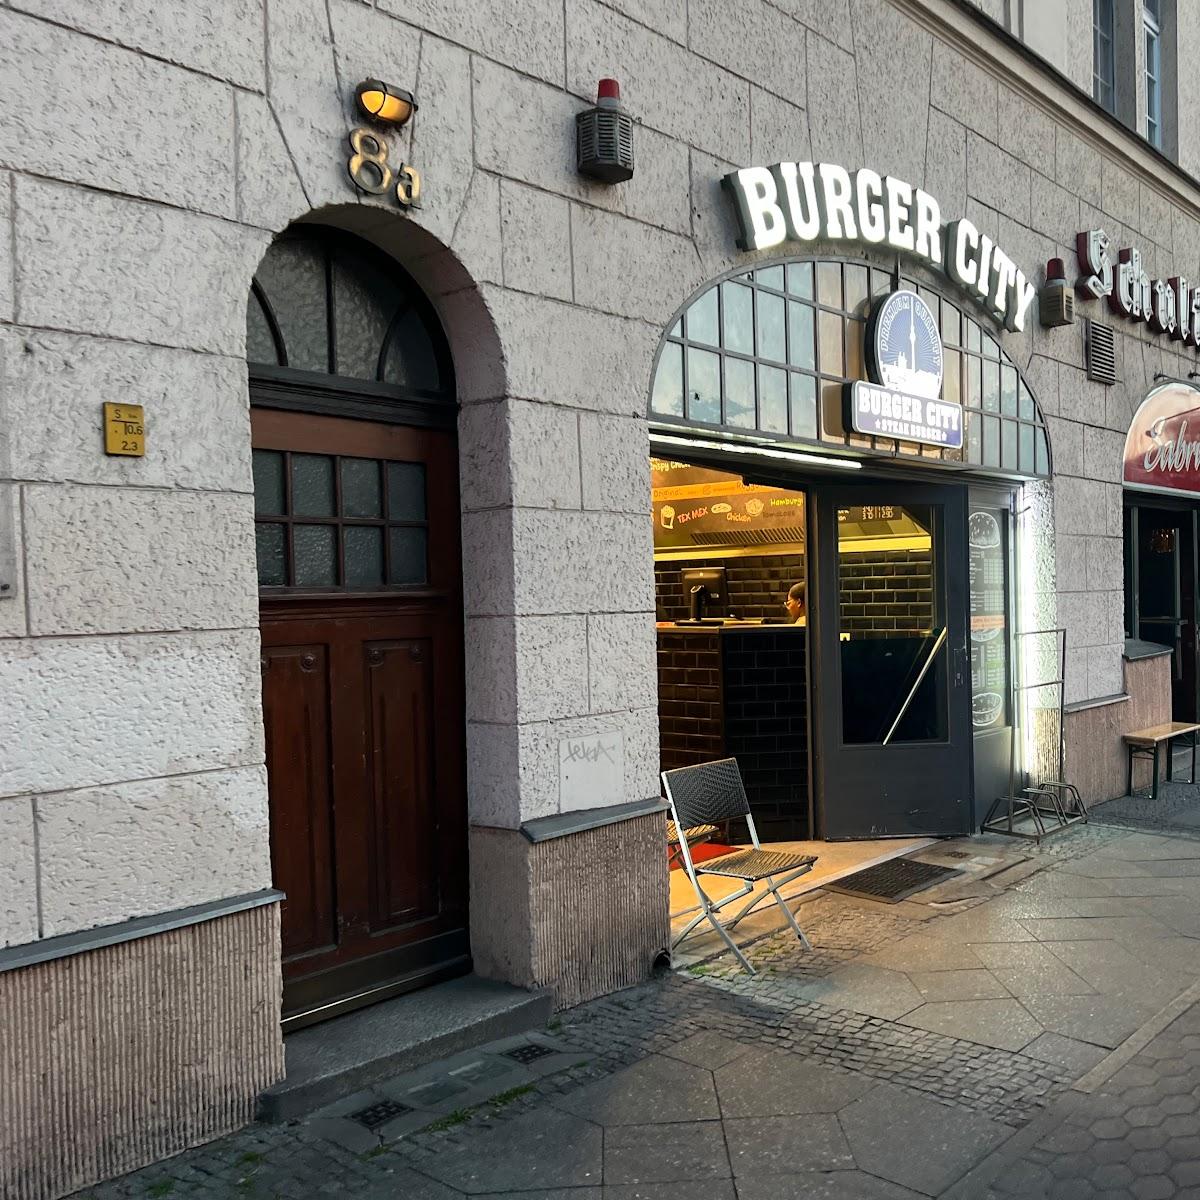 Restaurant "Burger City Zehlendorf" in Berlin